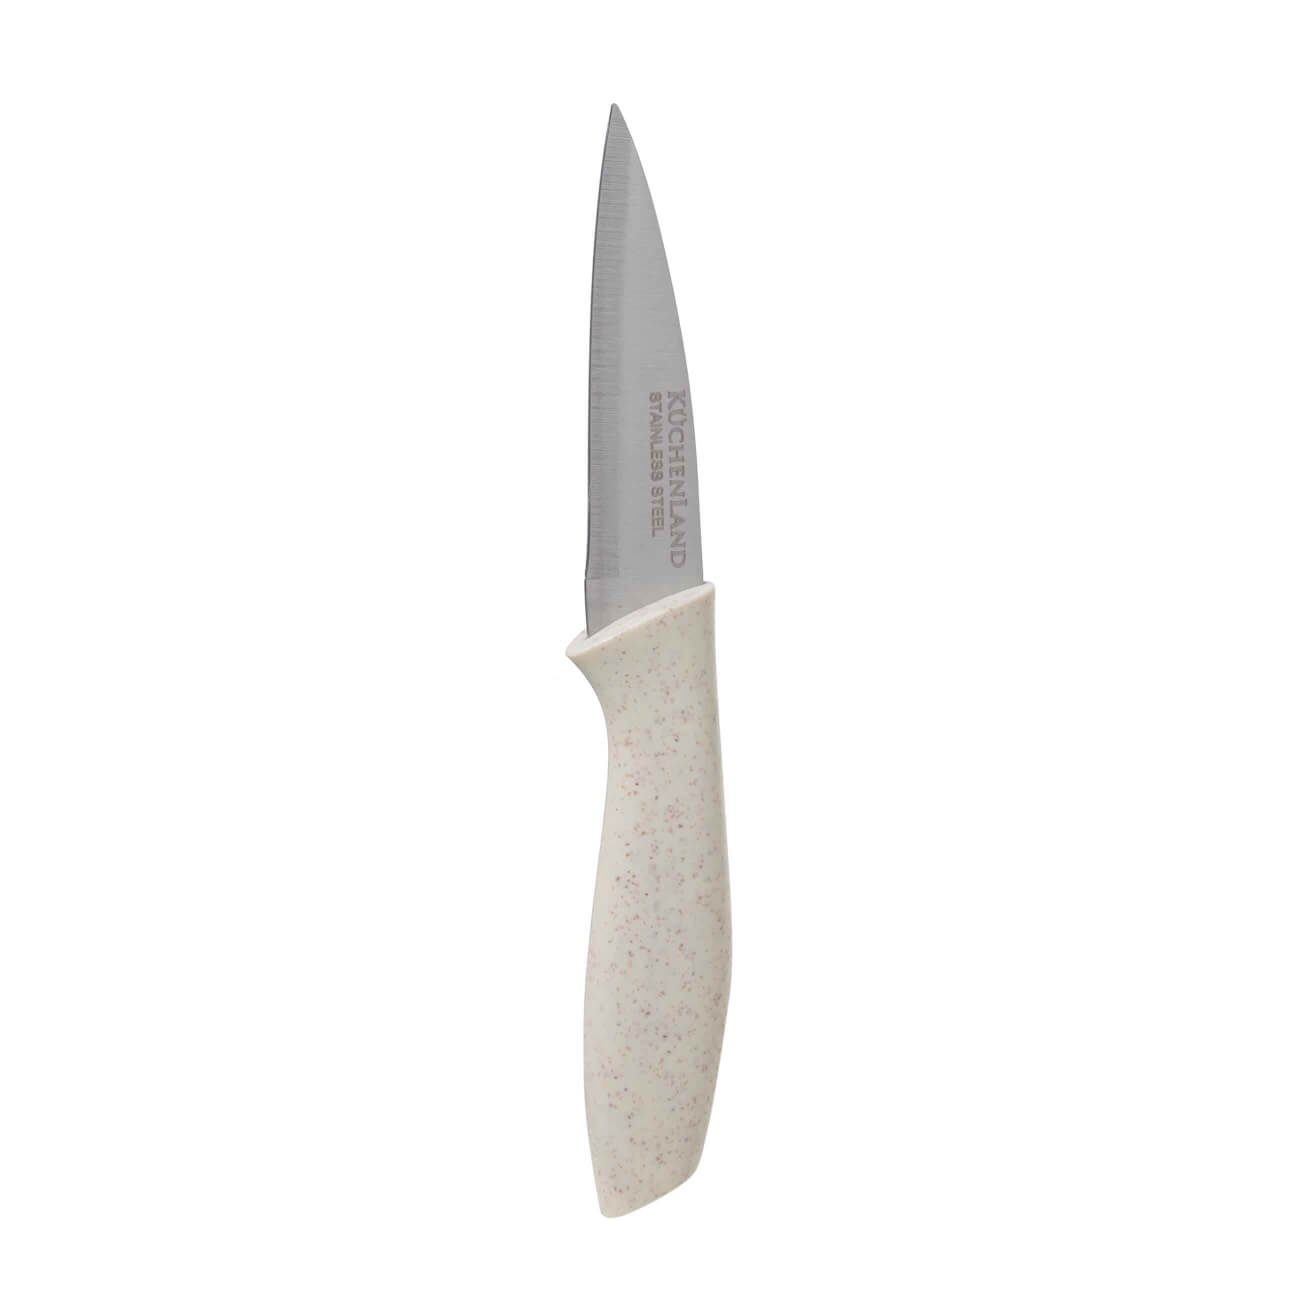 Нож для чистки овощей, 9 см, сталь/пластик, молочный, Speck-light кухонный нож для чистки овощей ladina